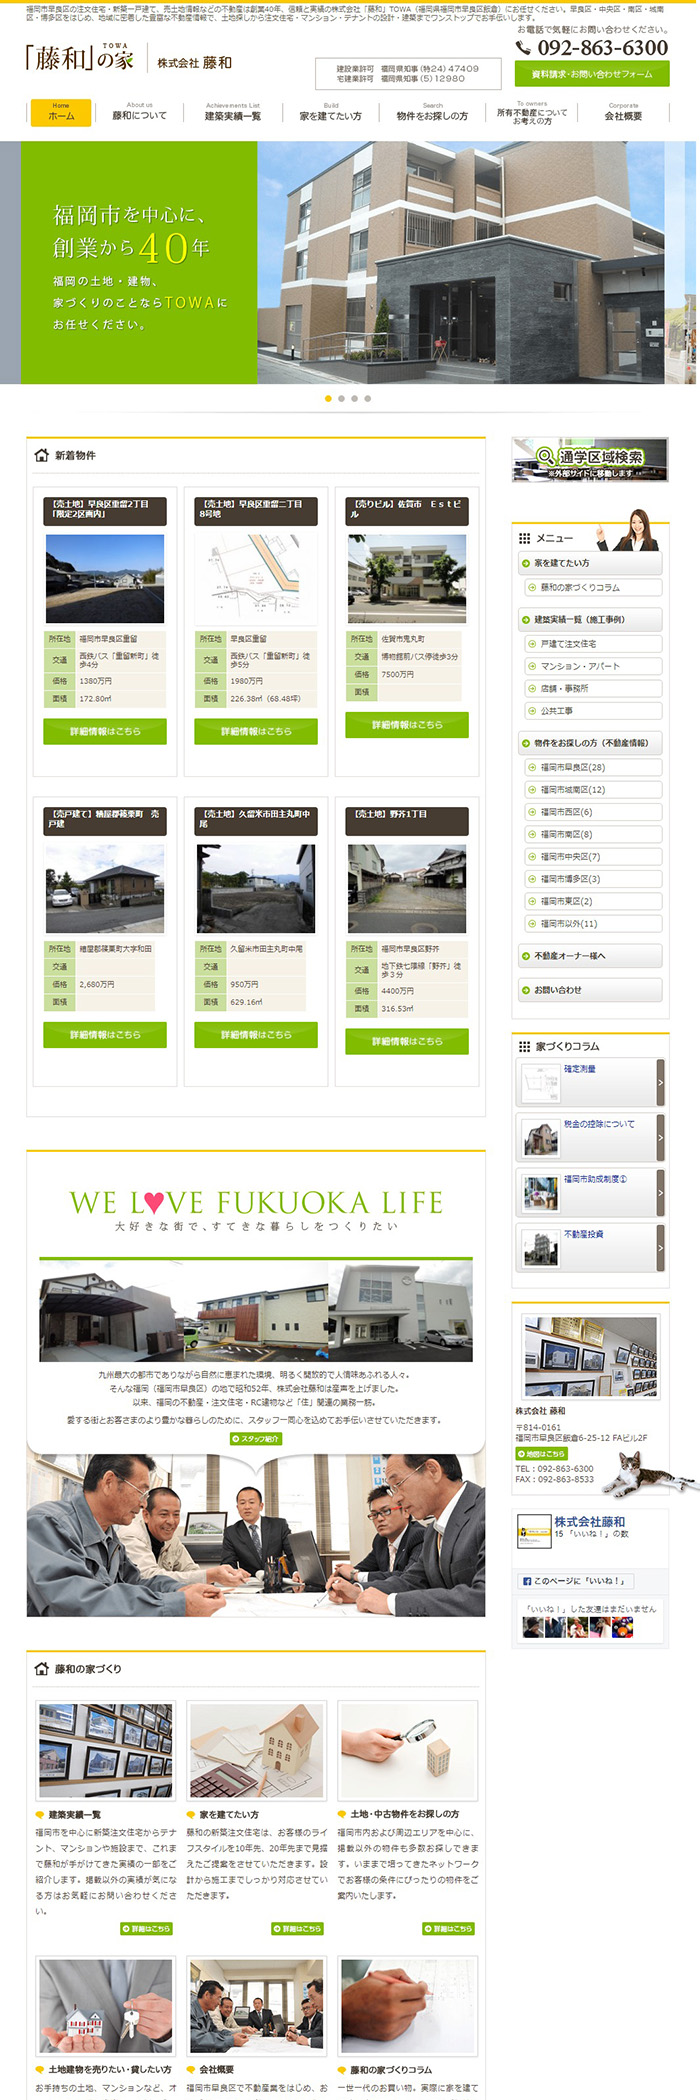 株式会社藤和様ホームページ制作実績 デスクトップイメージ